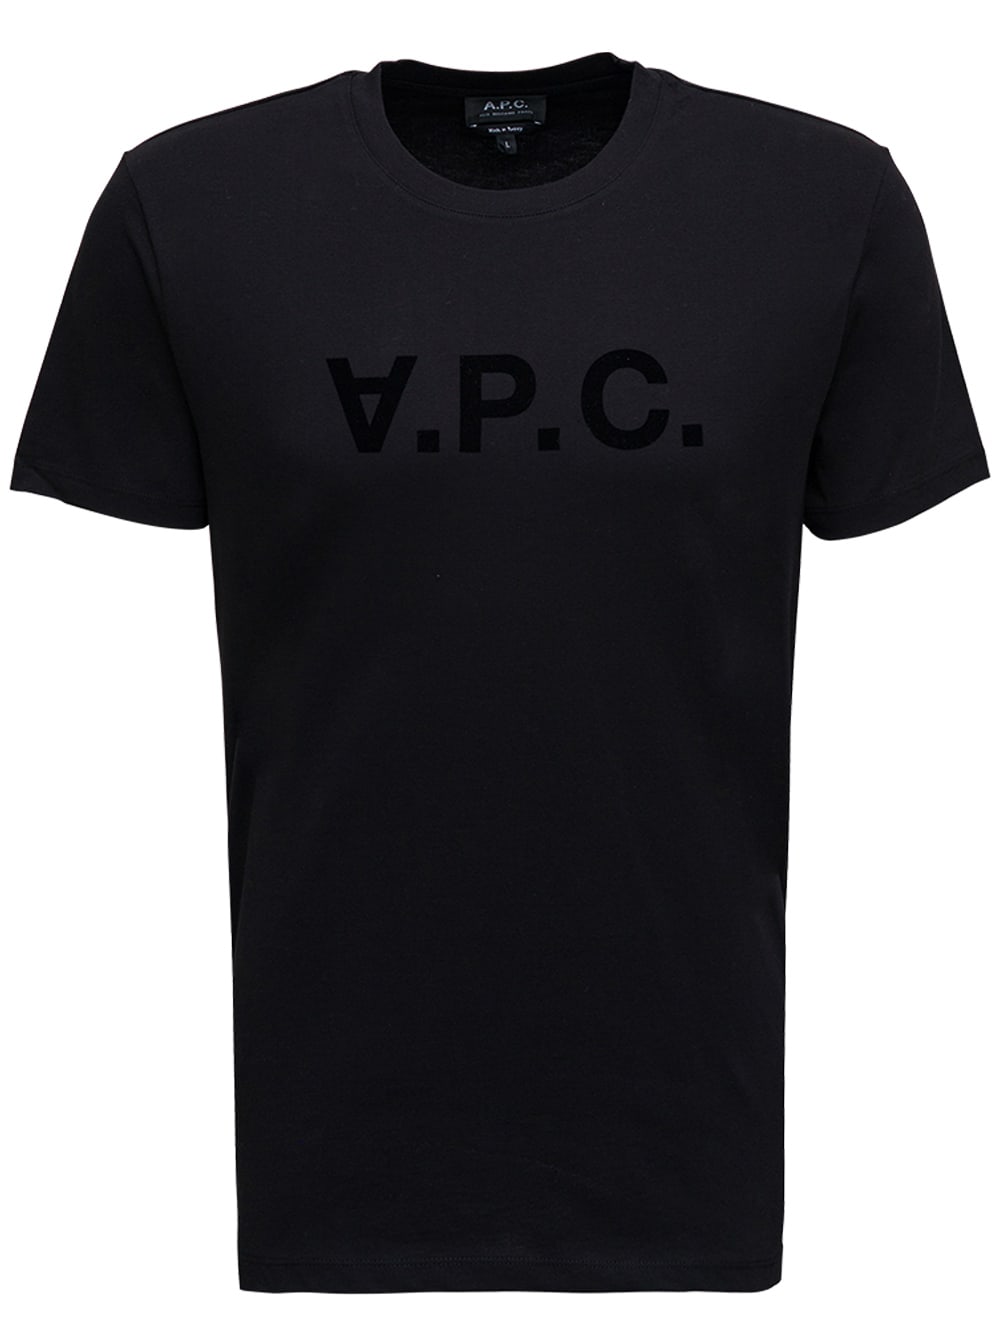 A.P.C. Black Cotton T-shirt With Logo